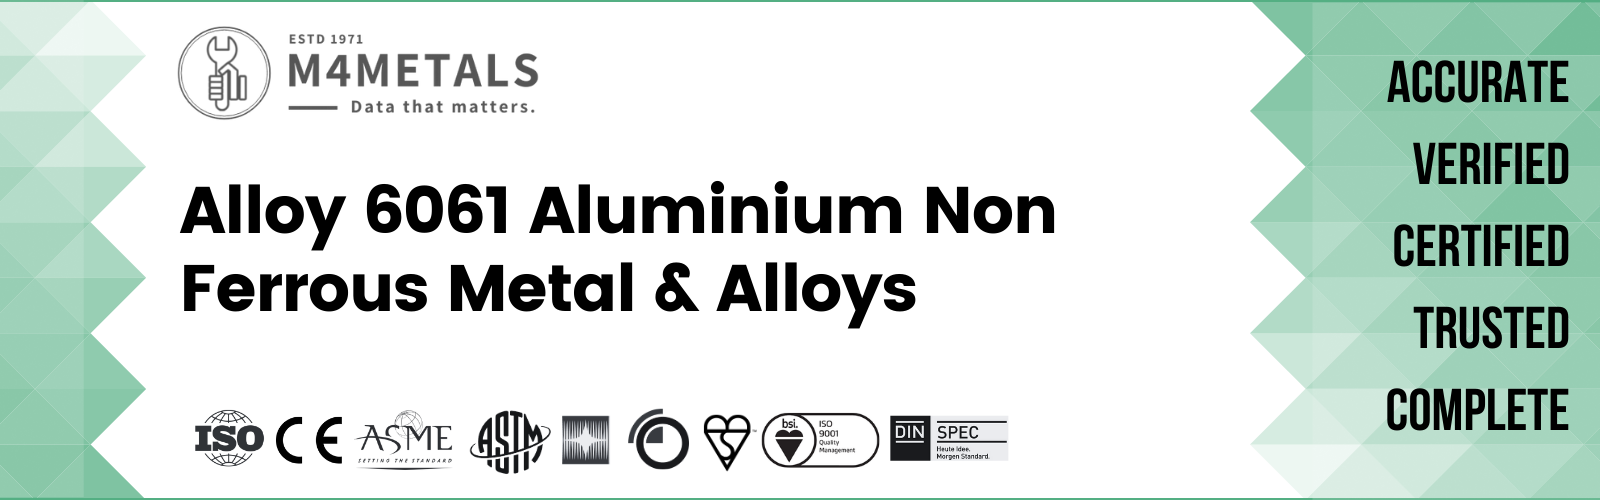 Aluminium Alloy 6061